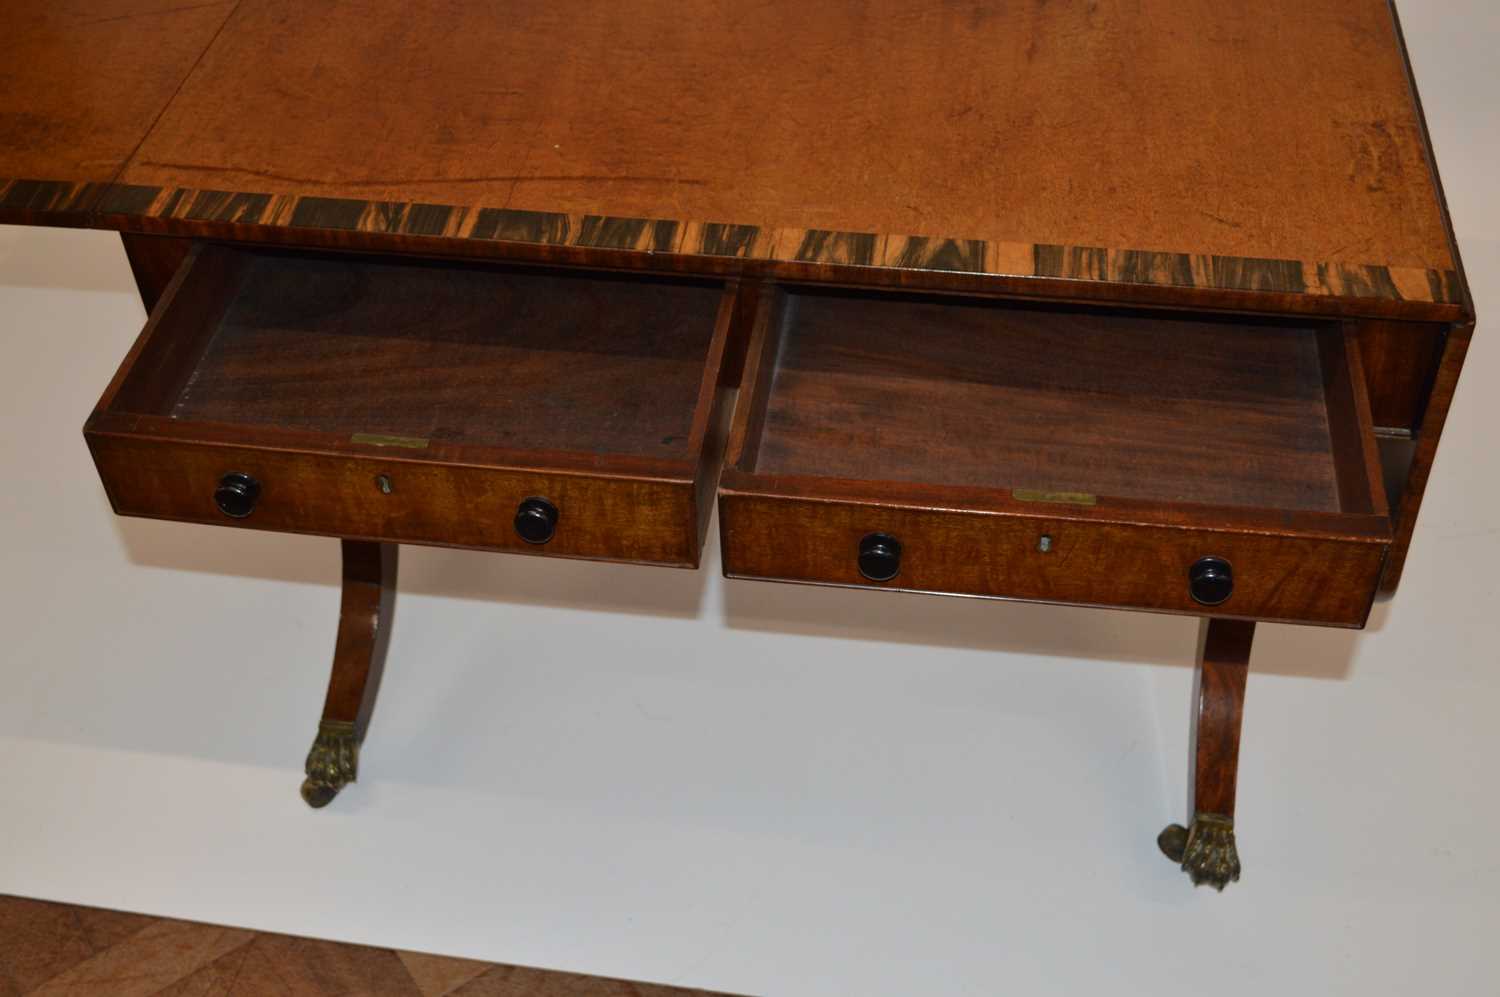 Early 19th Century Regency Mahogany and Coromandel Cross-Banded Sofa Table - Image 7 of 9